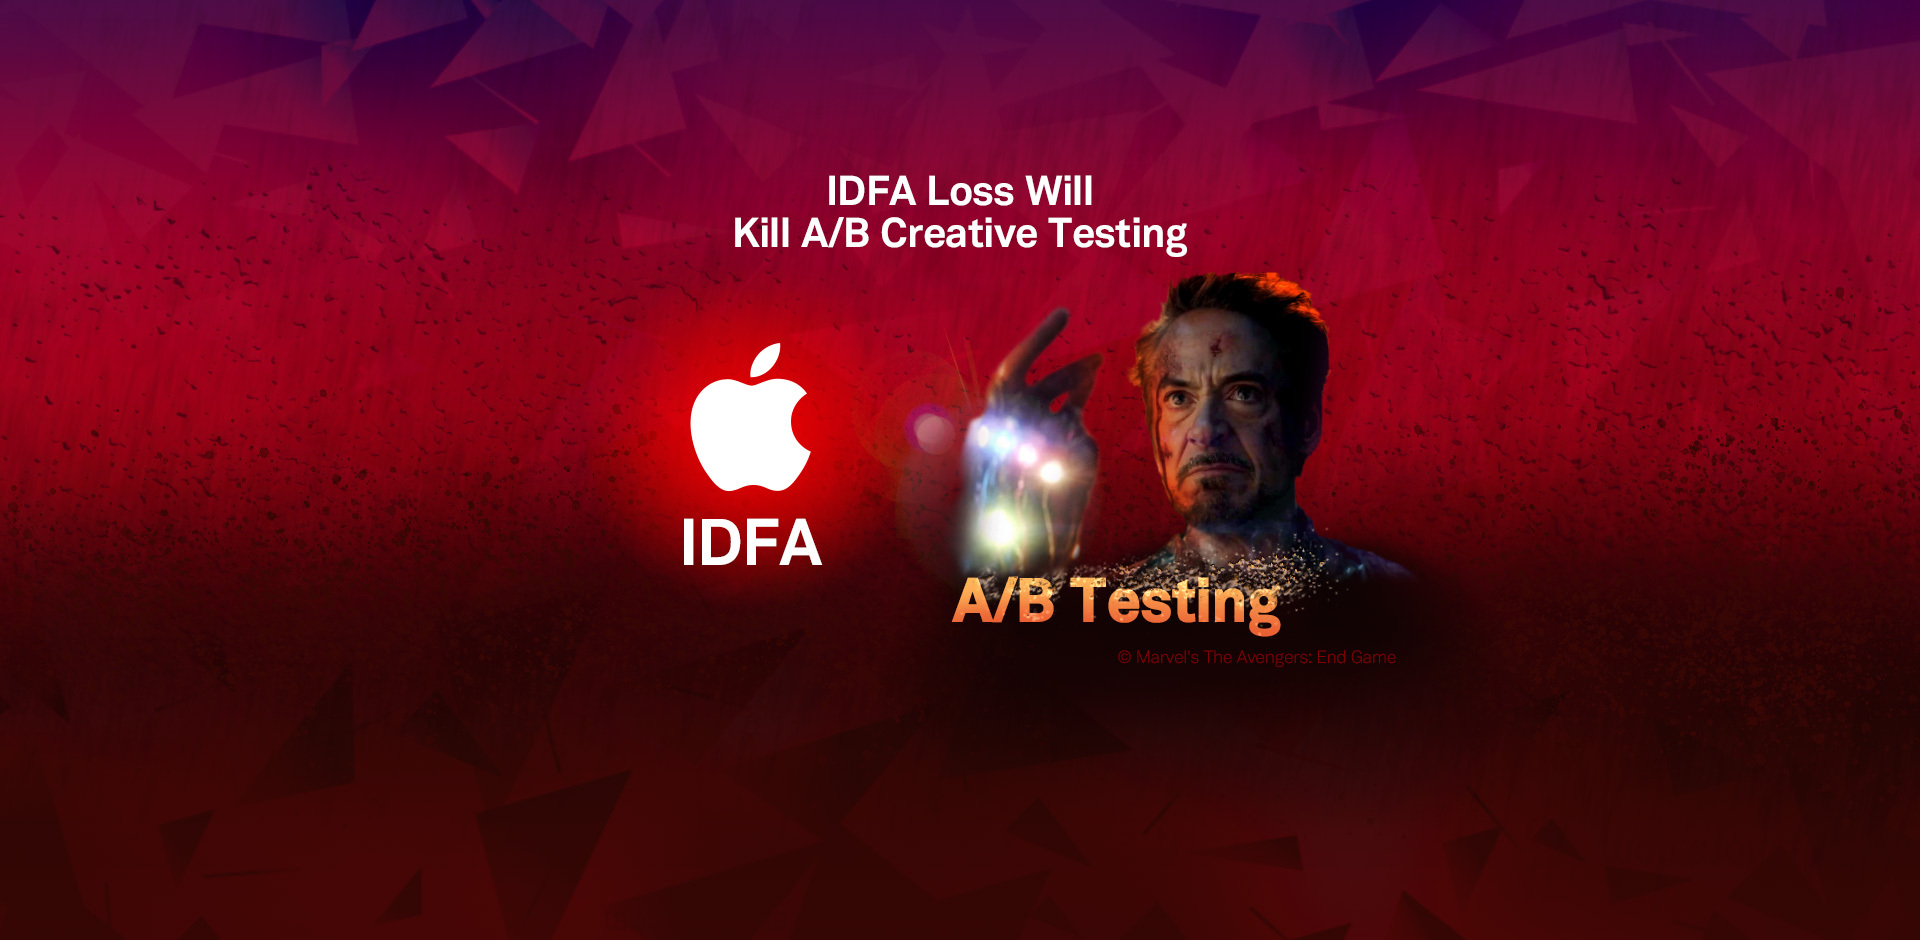 IDFA Loss Will Kill A/B Creative Testing